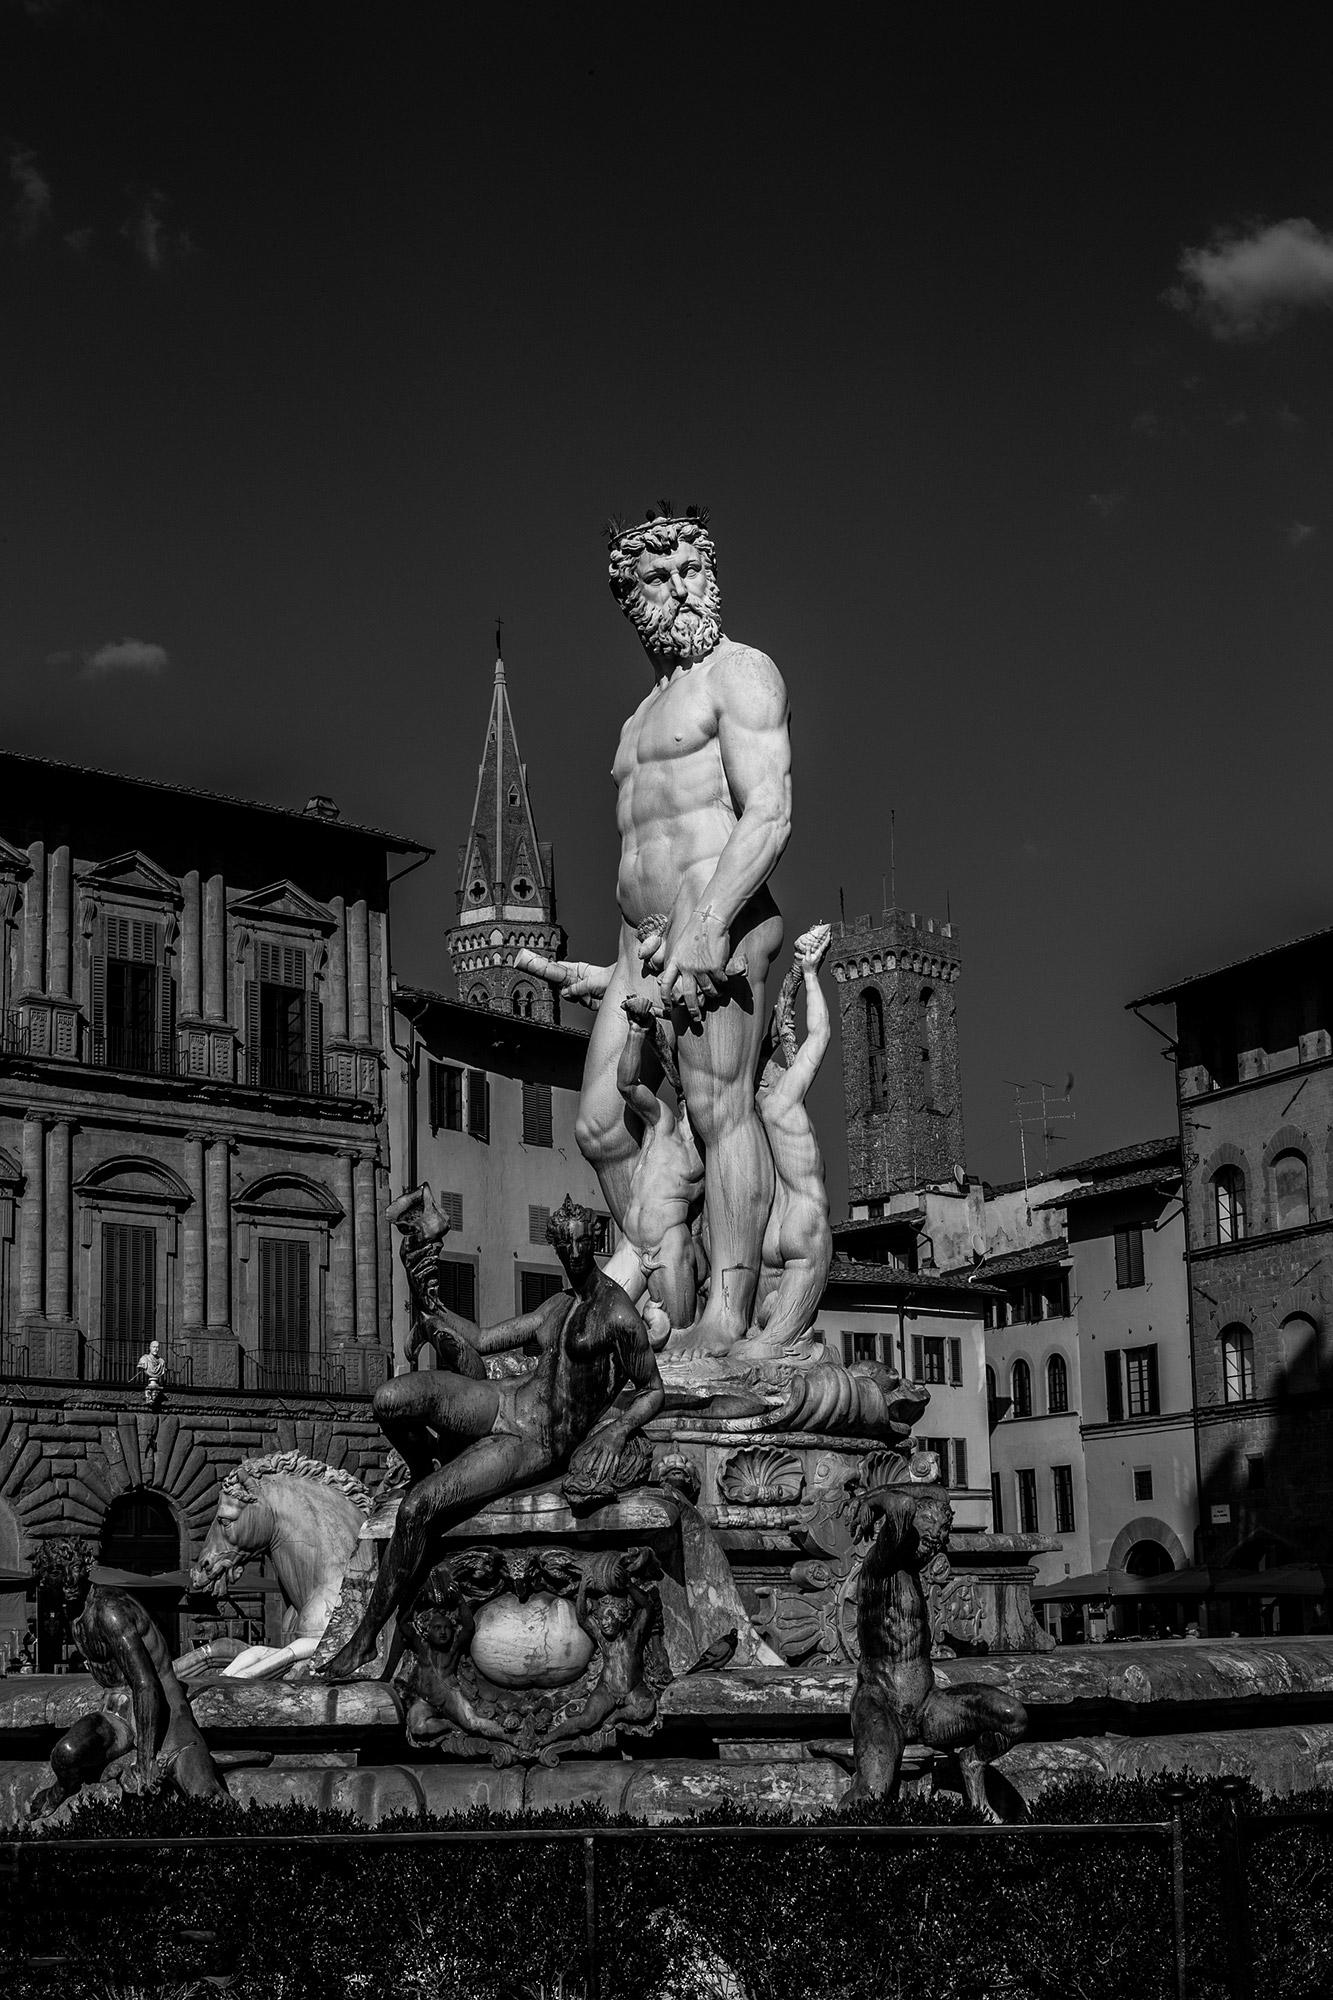 Juan Pablo Castro Landscape Photograph – Florenz. Figurative Landschaftsfotografie in Schwarz-Weiß in limitierter Auflage